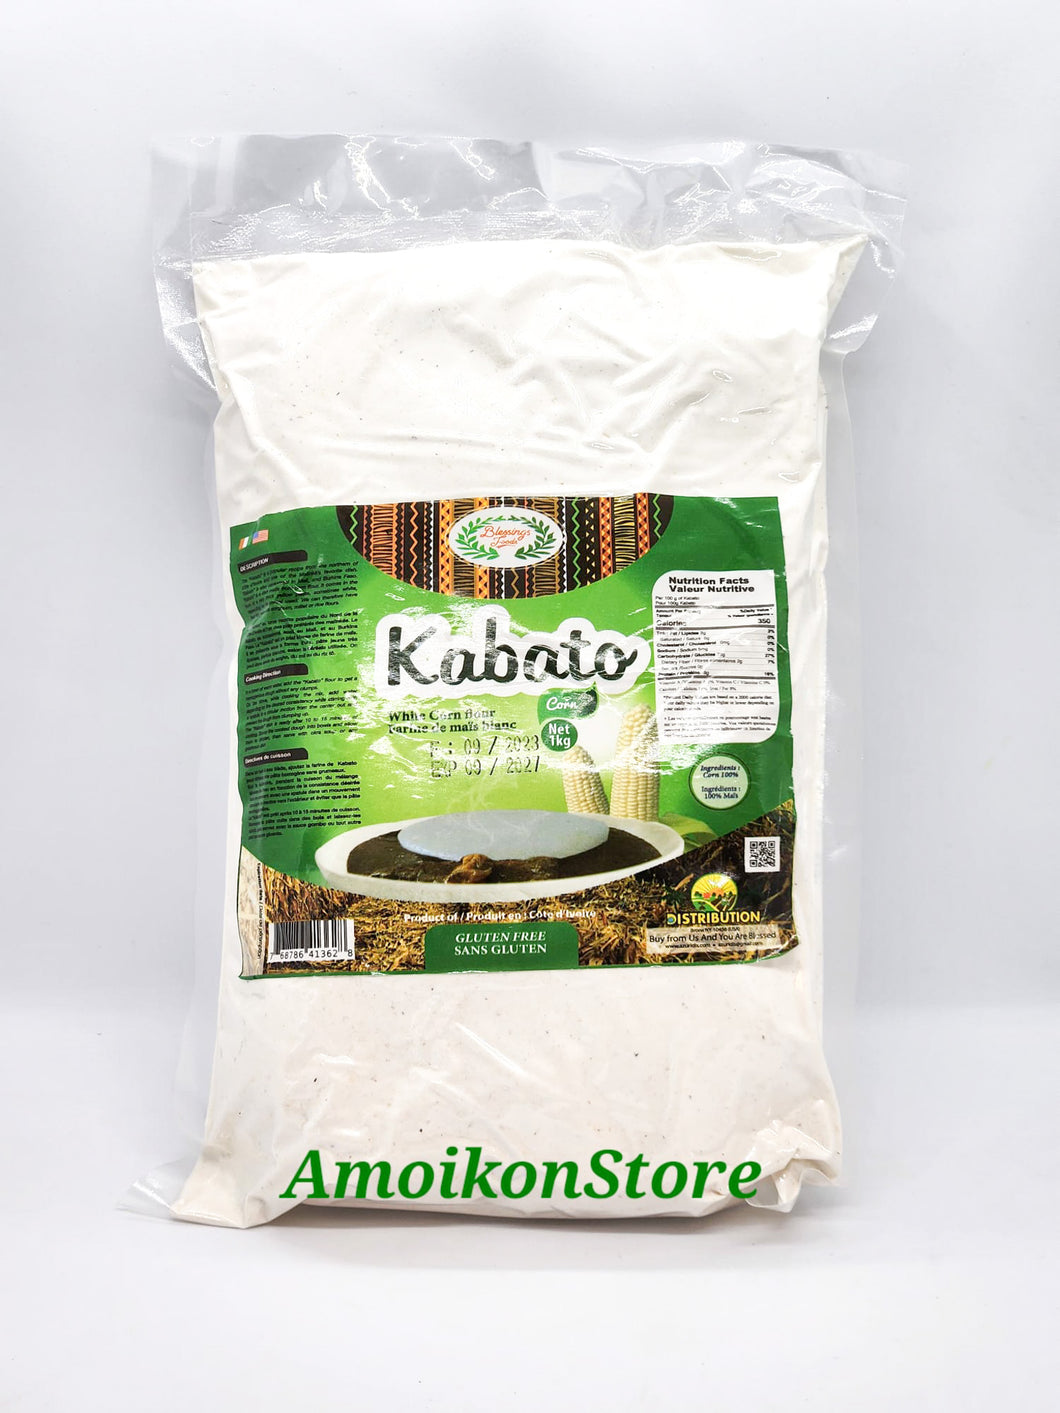 Kabato - Organic White & Yellow Corn Flour